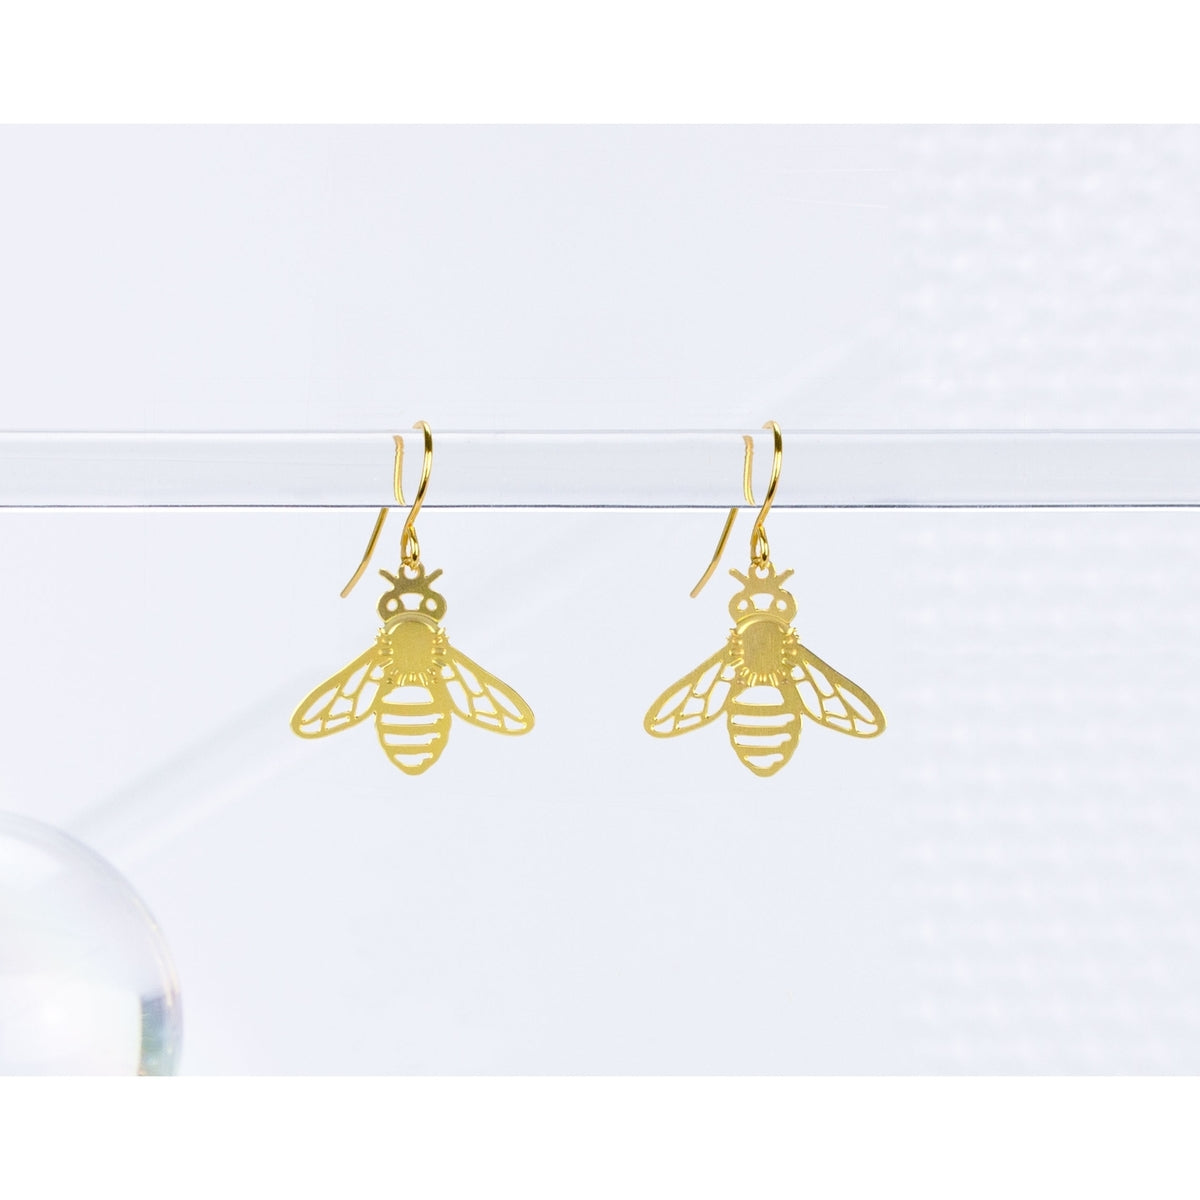 A Tea Leaf - Earrings - Honeybee - Short Ear Wires